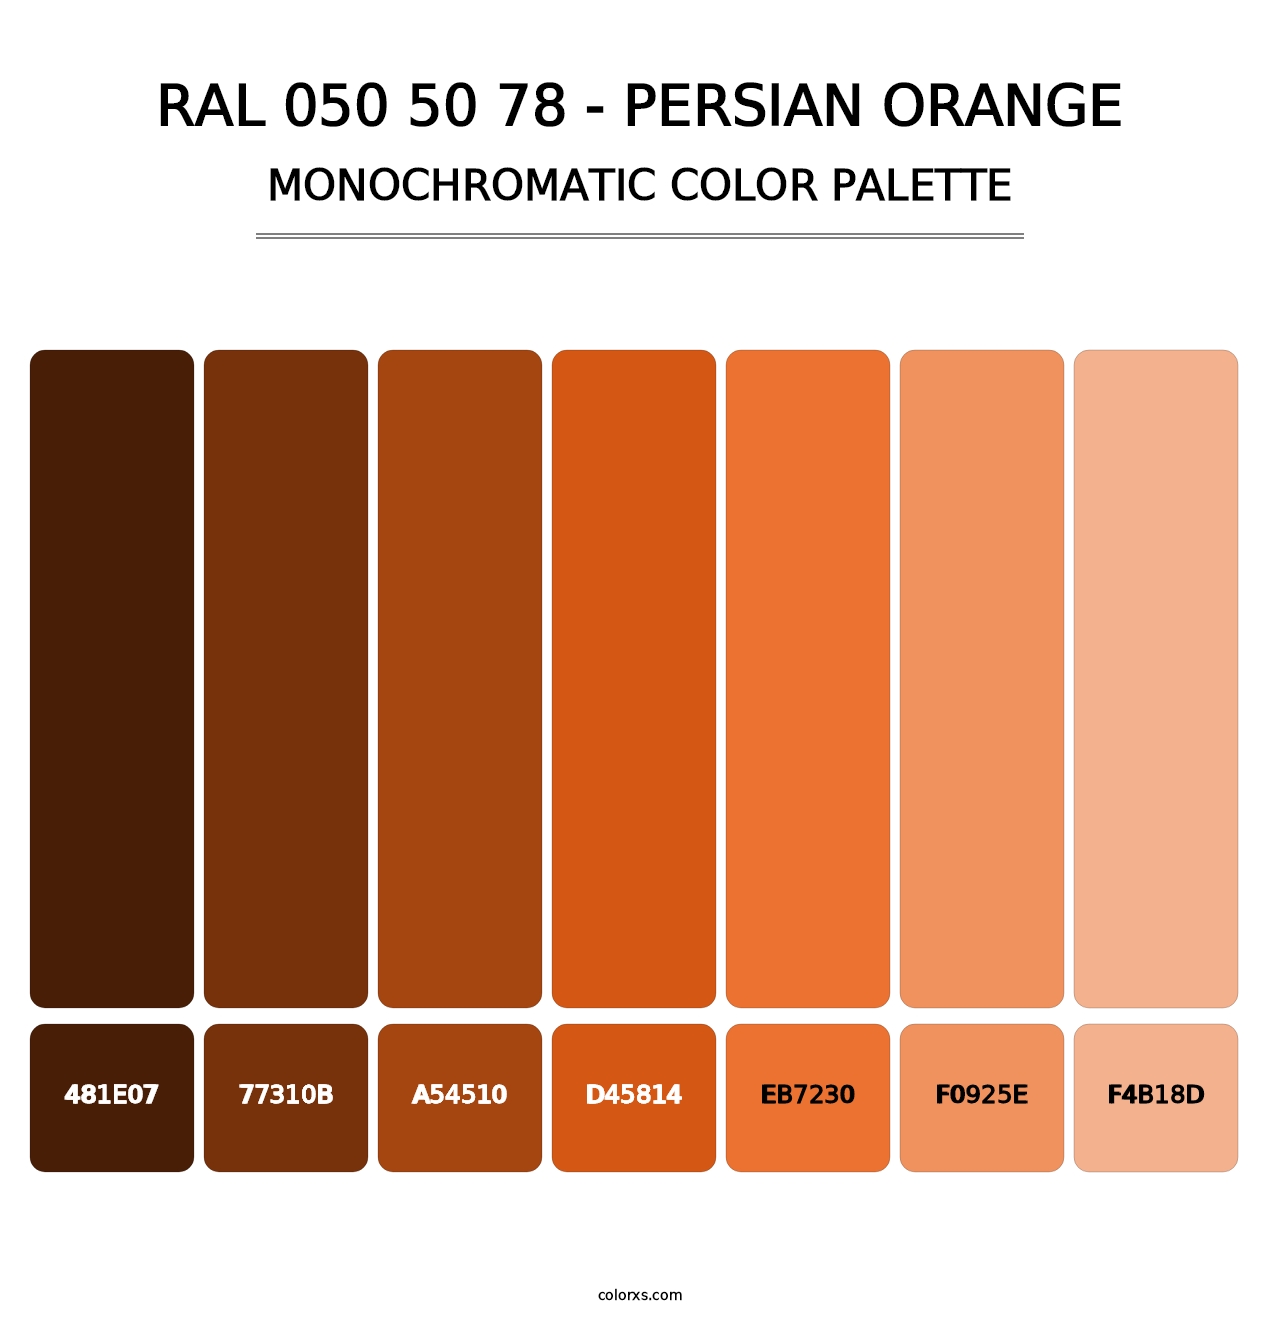 RAL 050 50 78 - Persian Orange - Monochromatic Color Palette